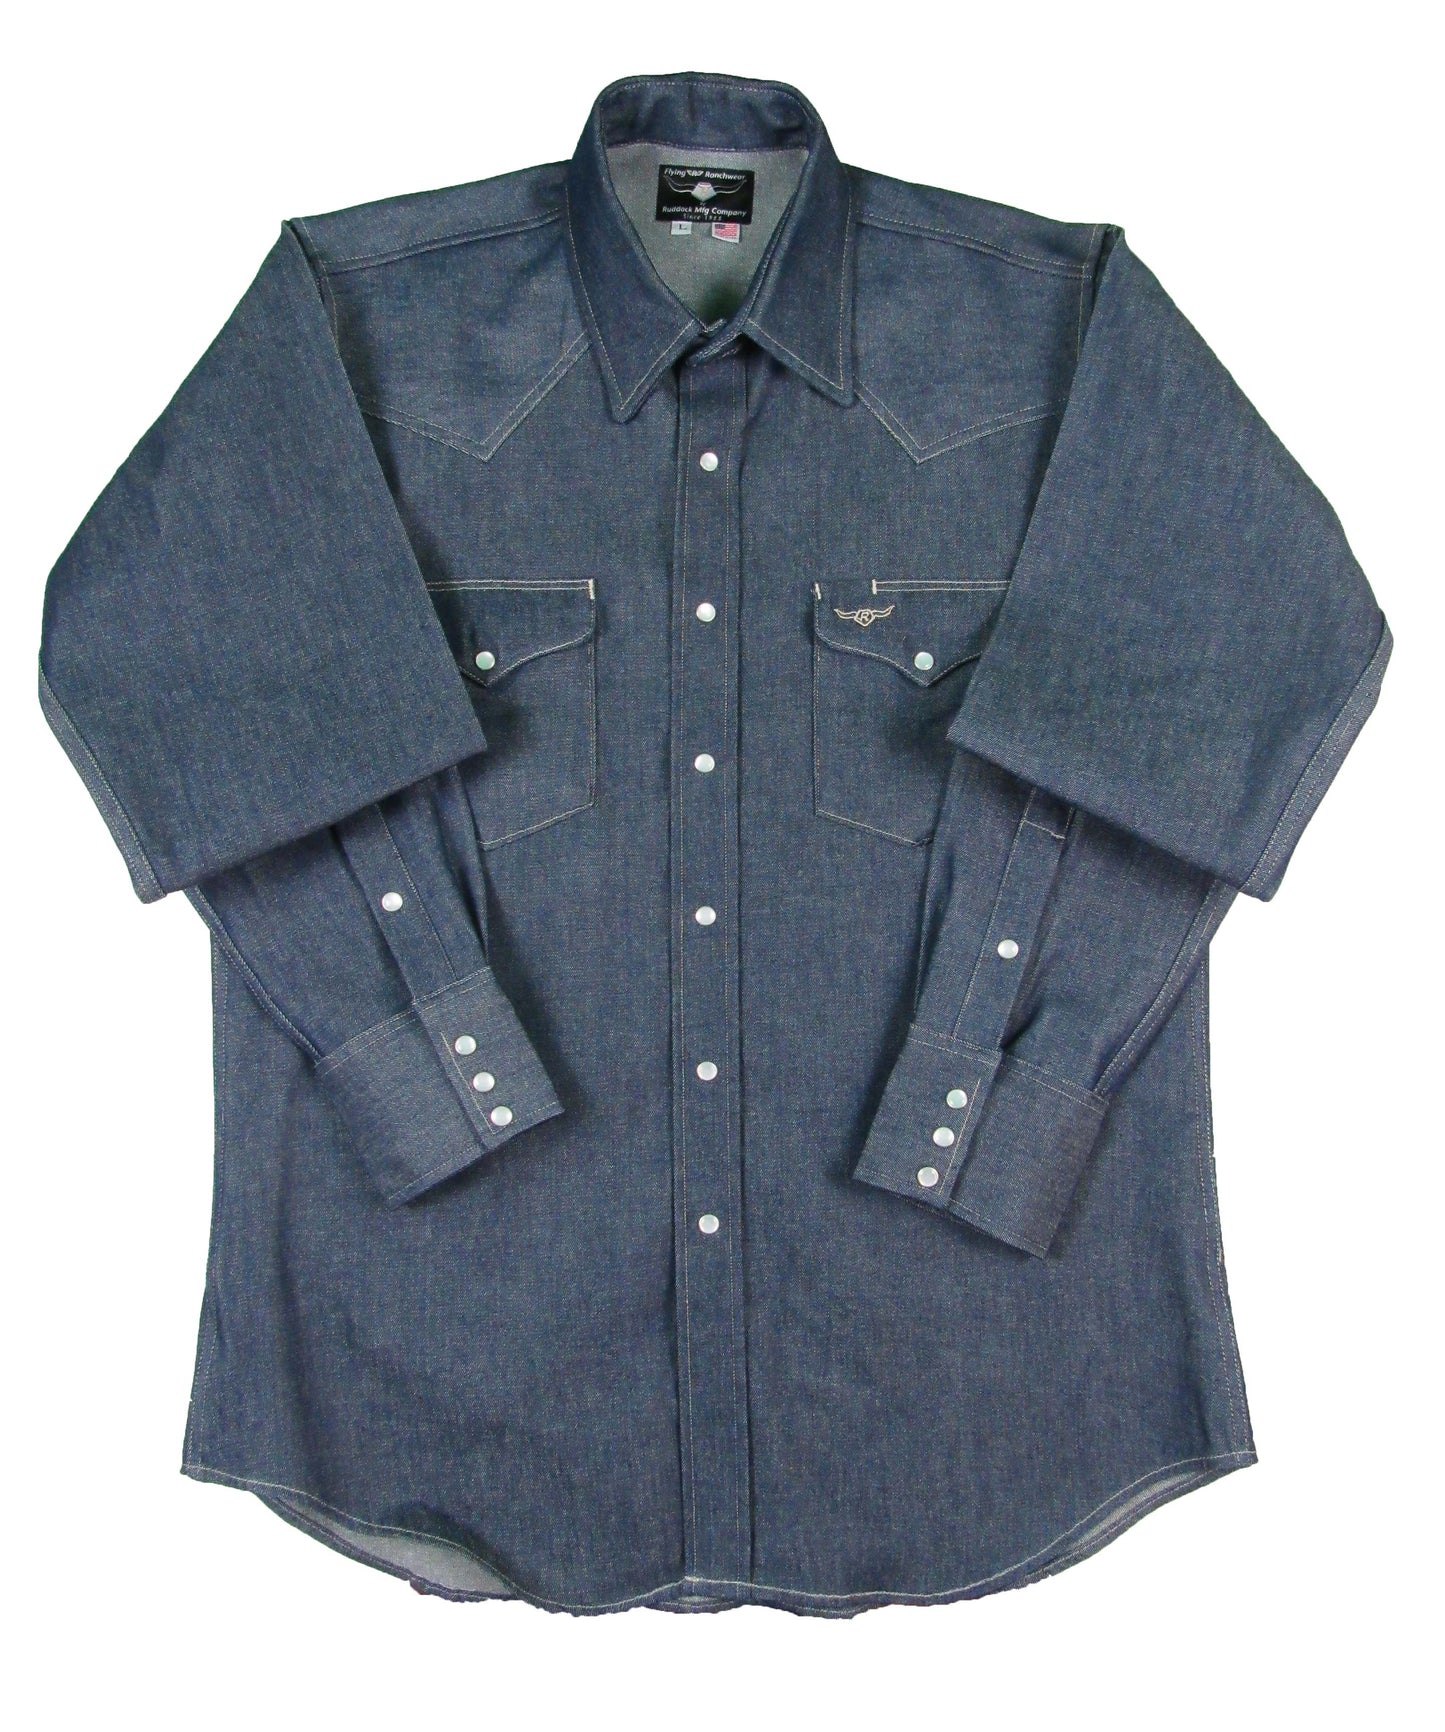 Rigid Indigo Denim Solid Work Shirt Made in USA Ruddock Shirts Big and Tall Flying R Ranchwear raw indigo denim